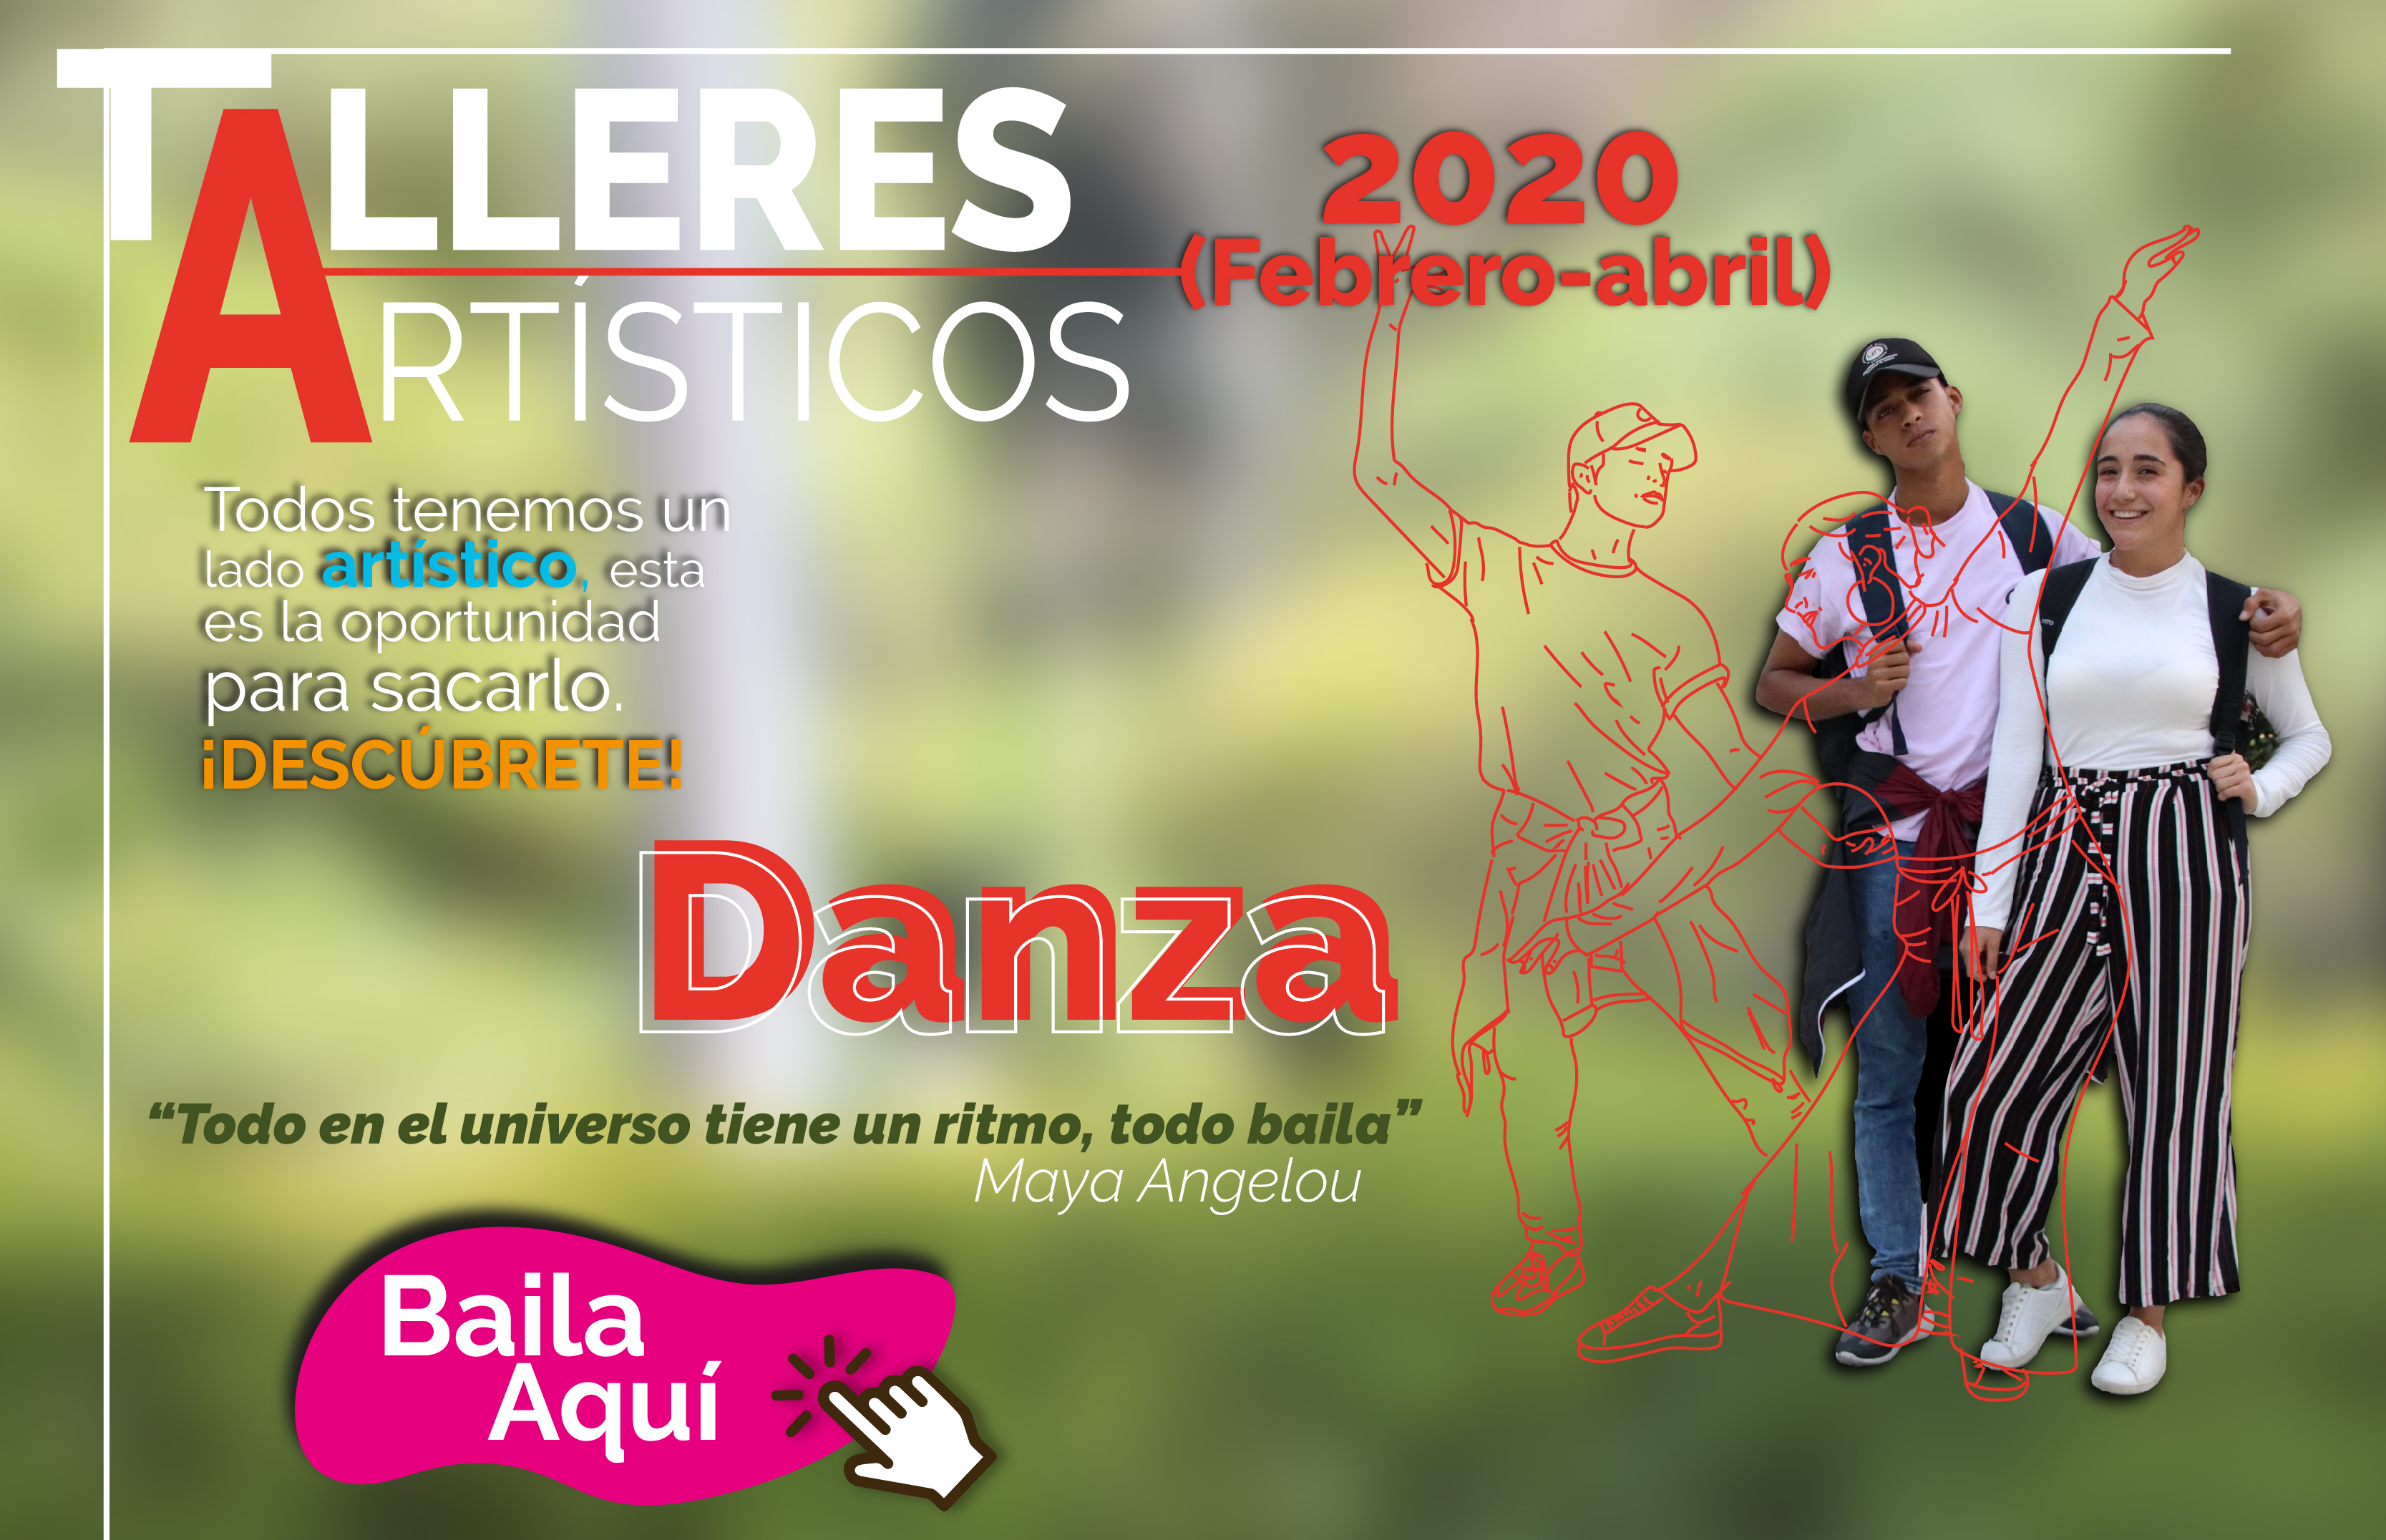 Talleres Artisticos 2020 Banner 2